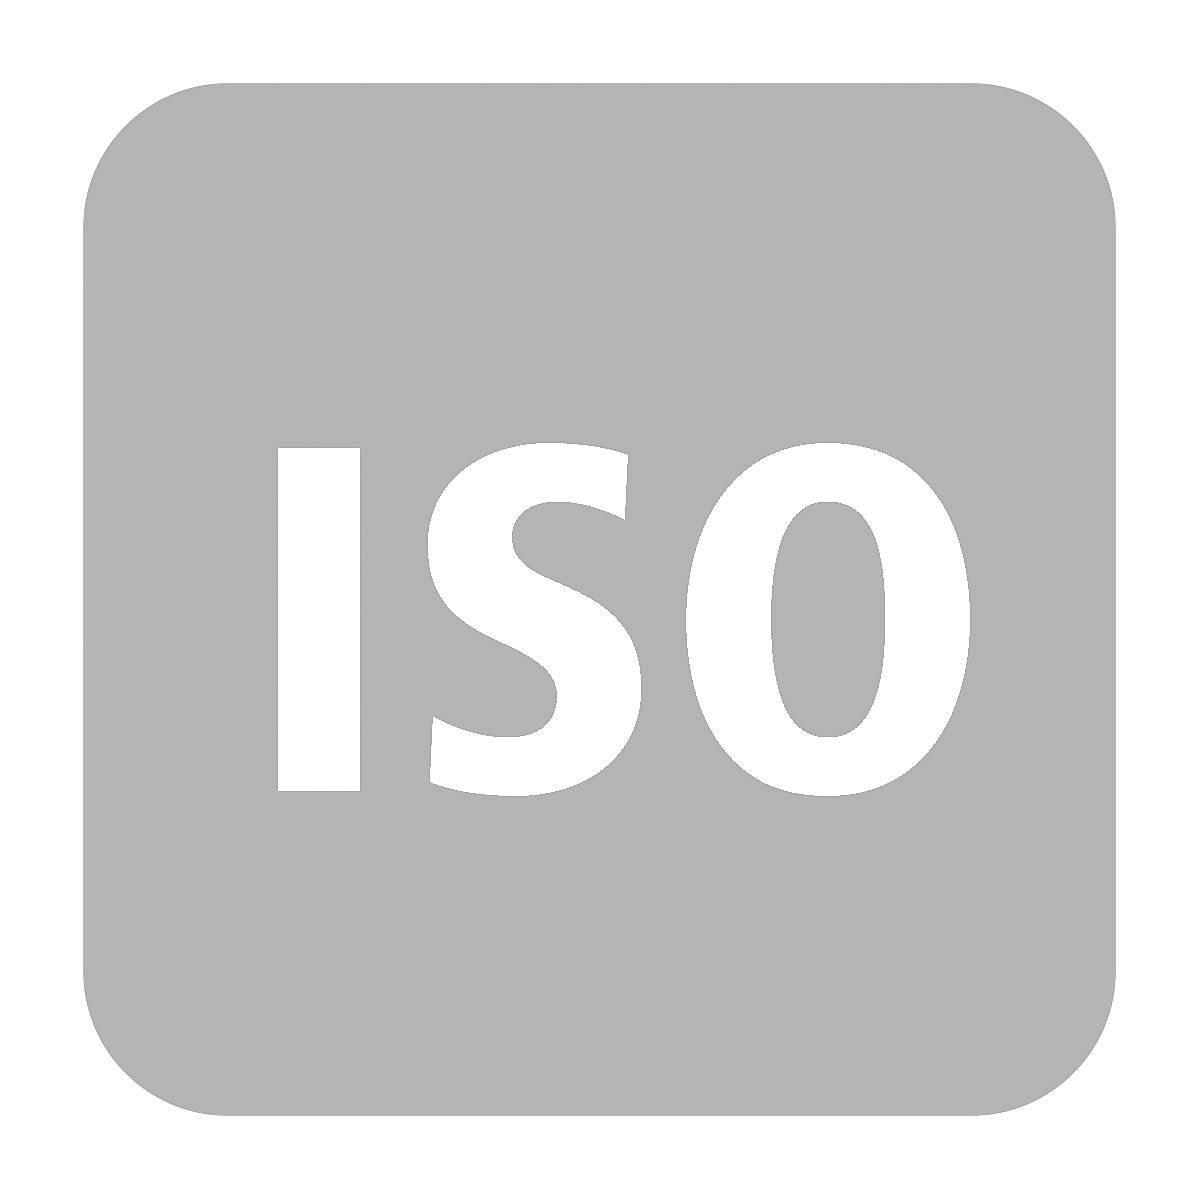 Felár az ISO-kivitelnél